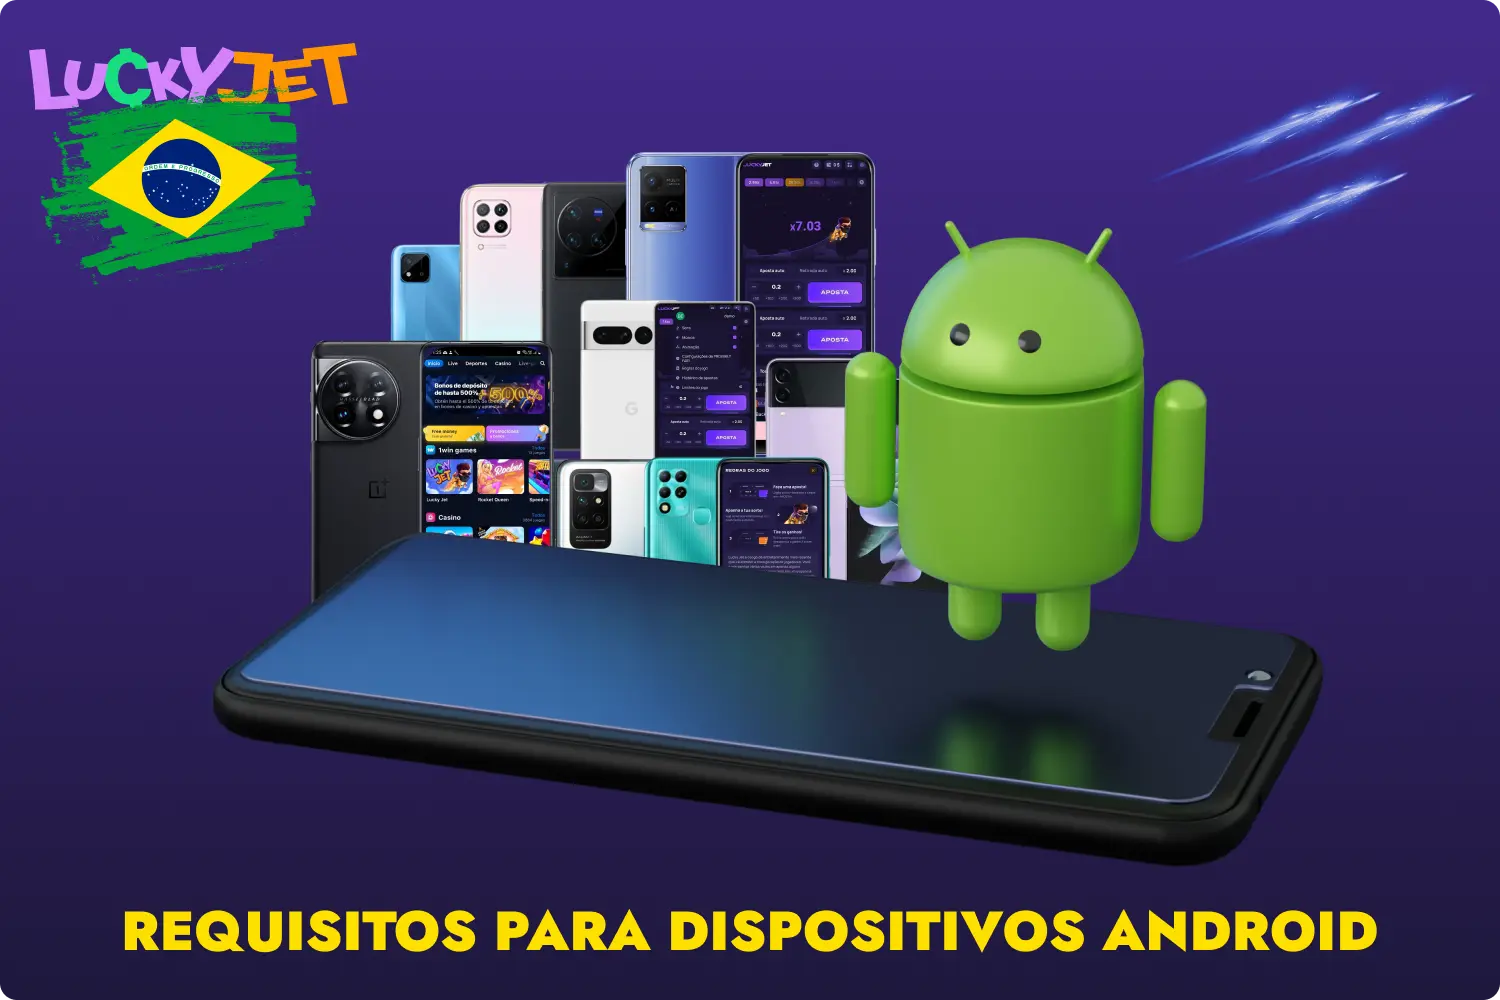 Os requisitos para dispositivos Android não limitam a utilização da aplicação 1win Lucky Jet, mas são recomendados para melhorar a experiência de utilização dos jogadores brasileiros